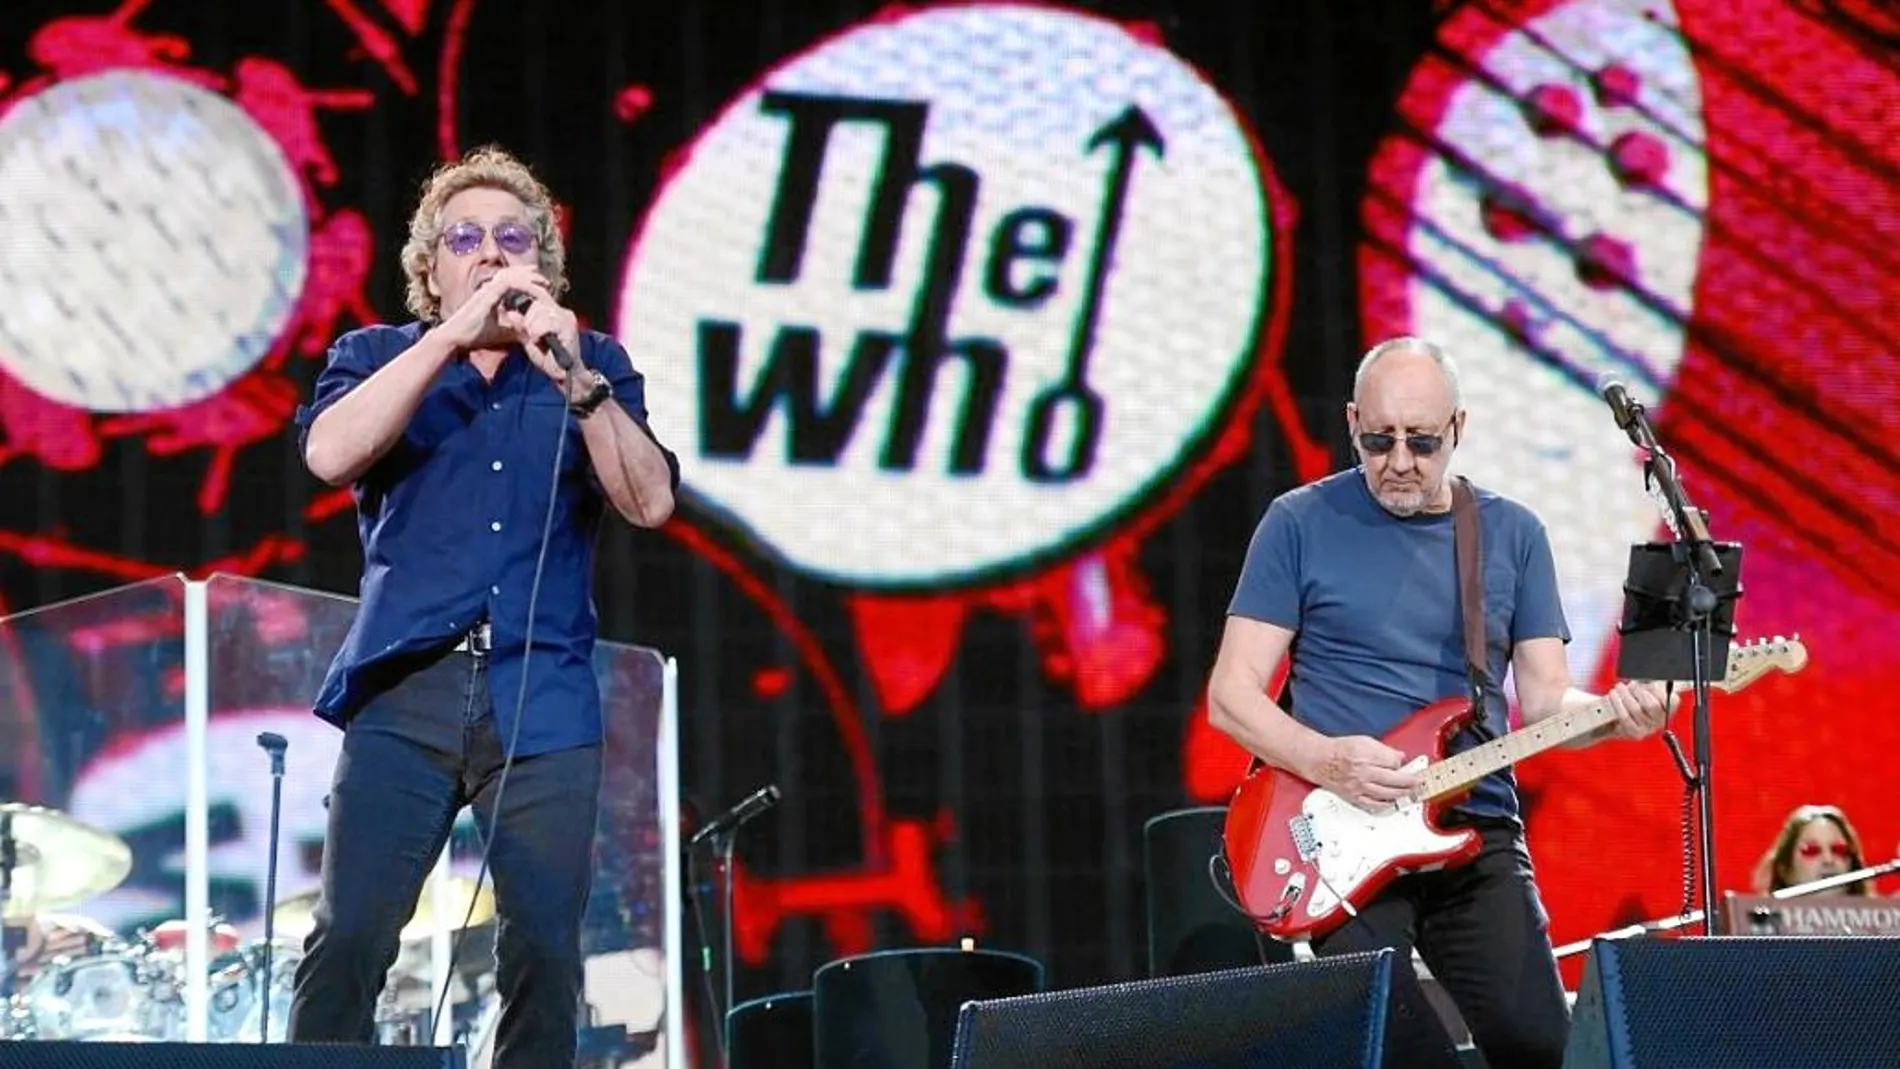 Pete Townshend y Roger Daltrey, The Who, encabezan la primera jornada, el jueves 16